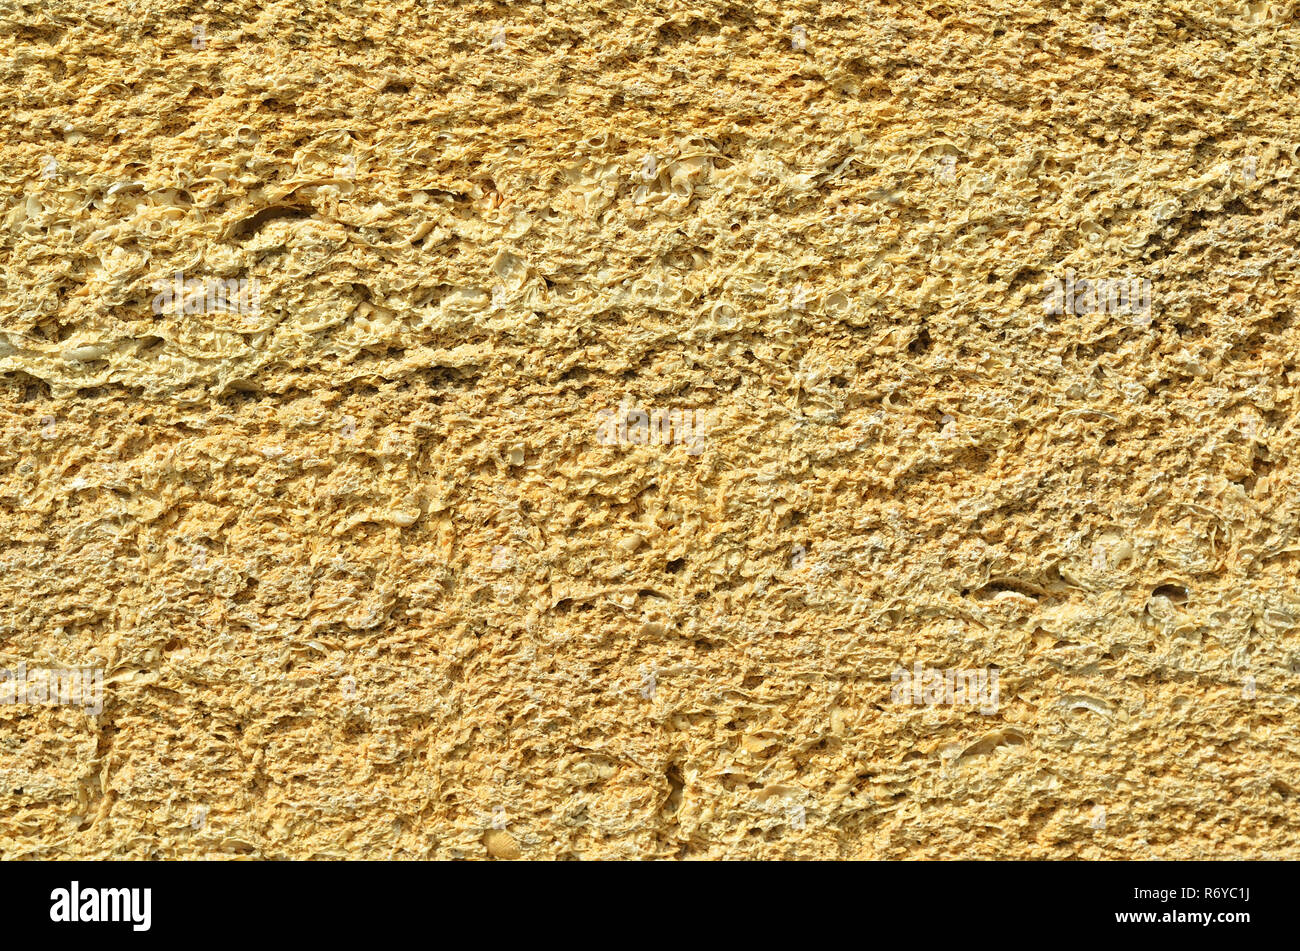 Le mur est fait de briques de Crimée, la brique à partir de coquillages, de texture. Banque D'Images